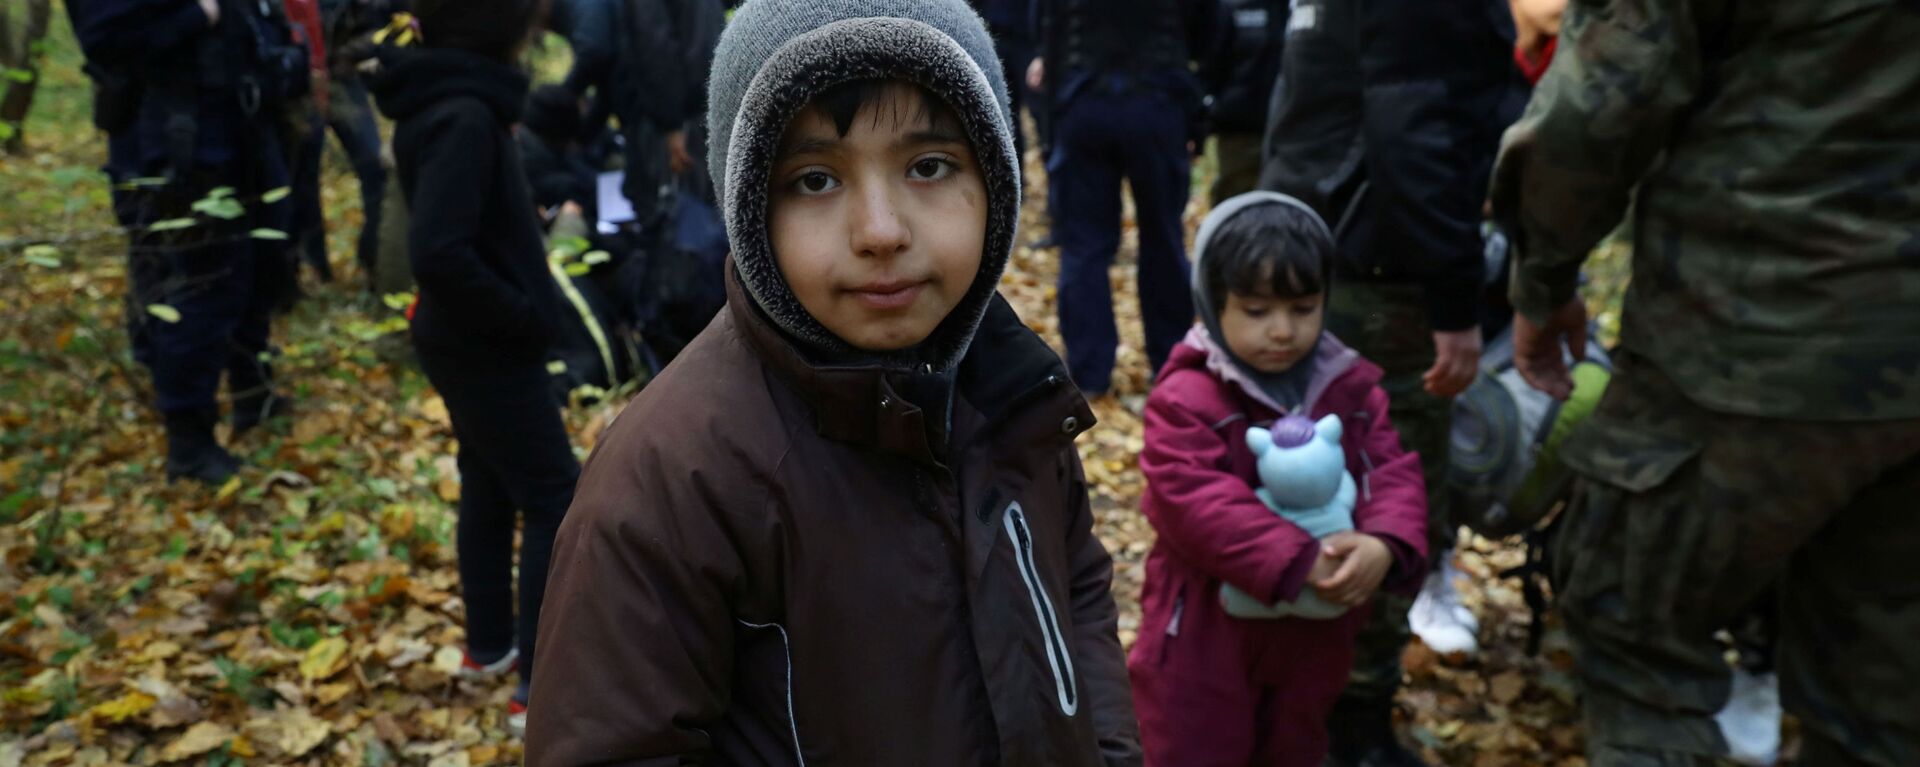 Иракский ребенок в окружении пограничников и полицейских после пересечения белорусско-польской границы в городе Хайнувка, Польша - Sputnik Латвия, 1920, 16.10.2021